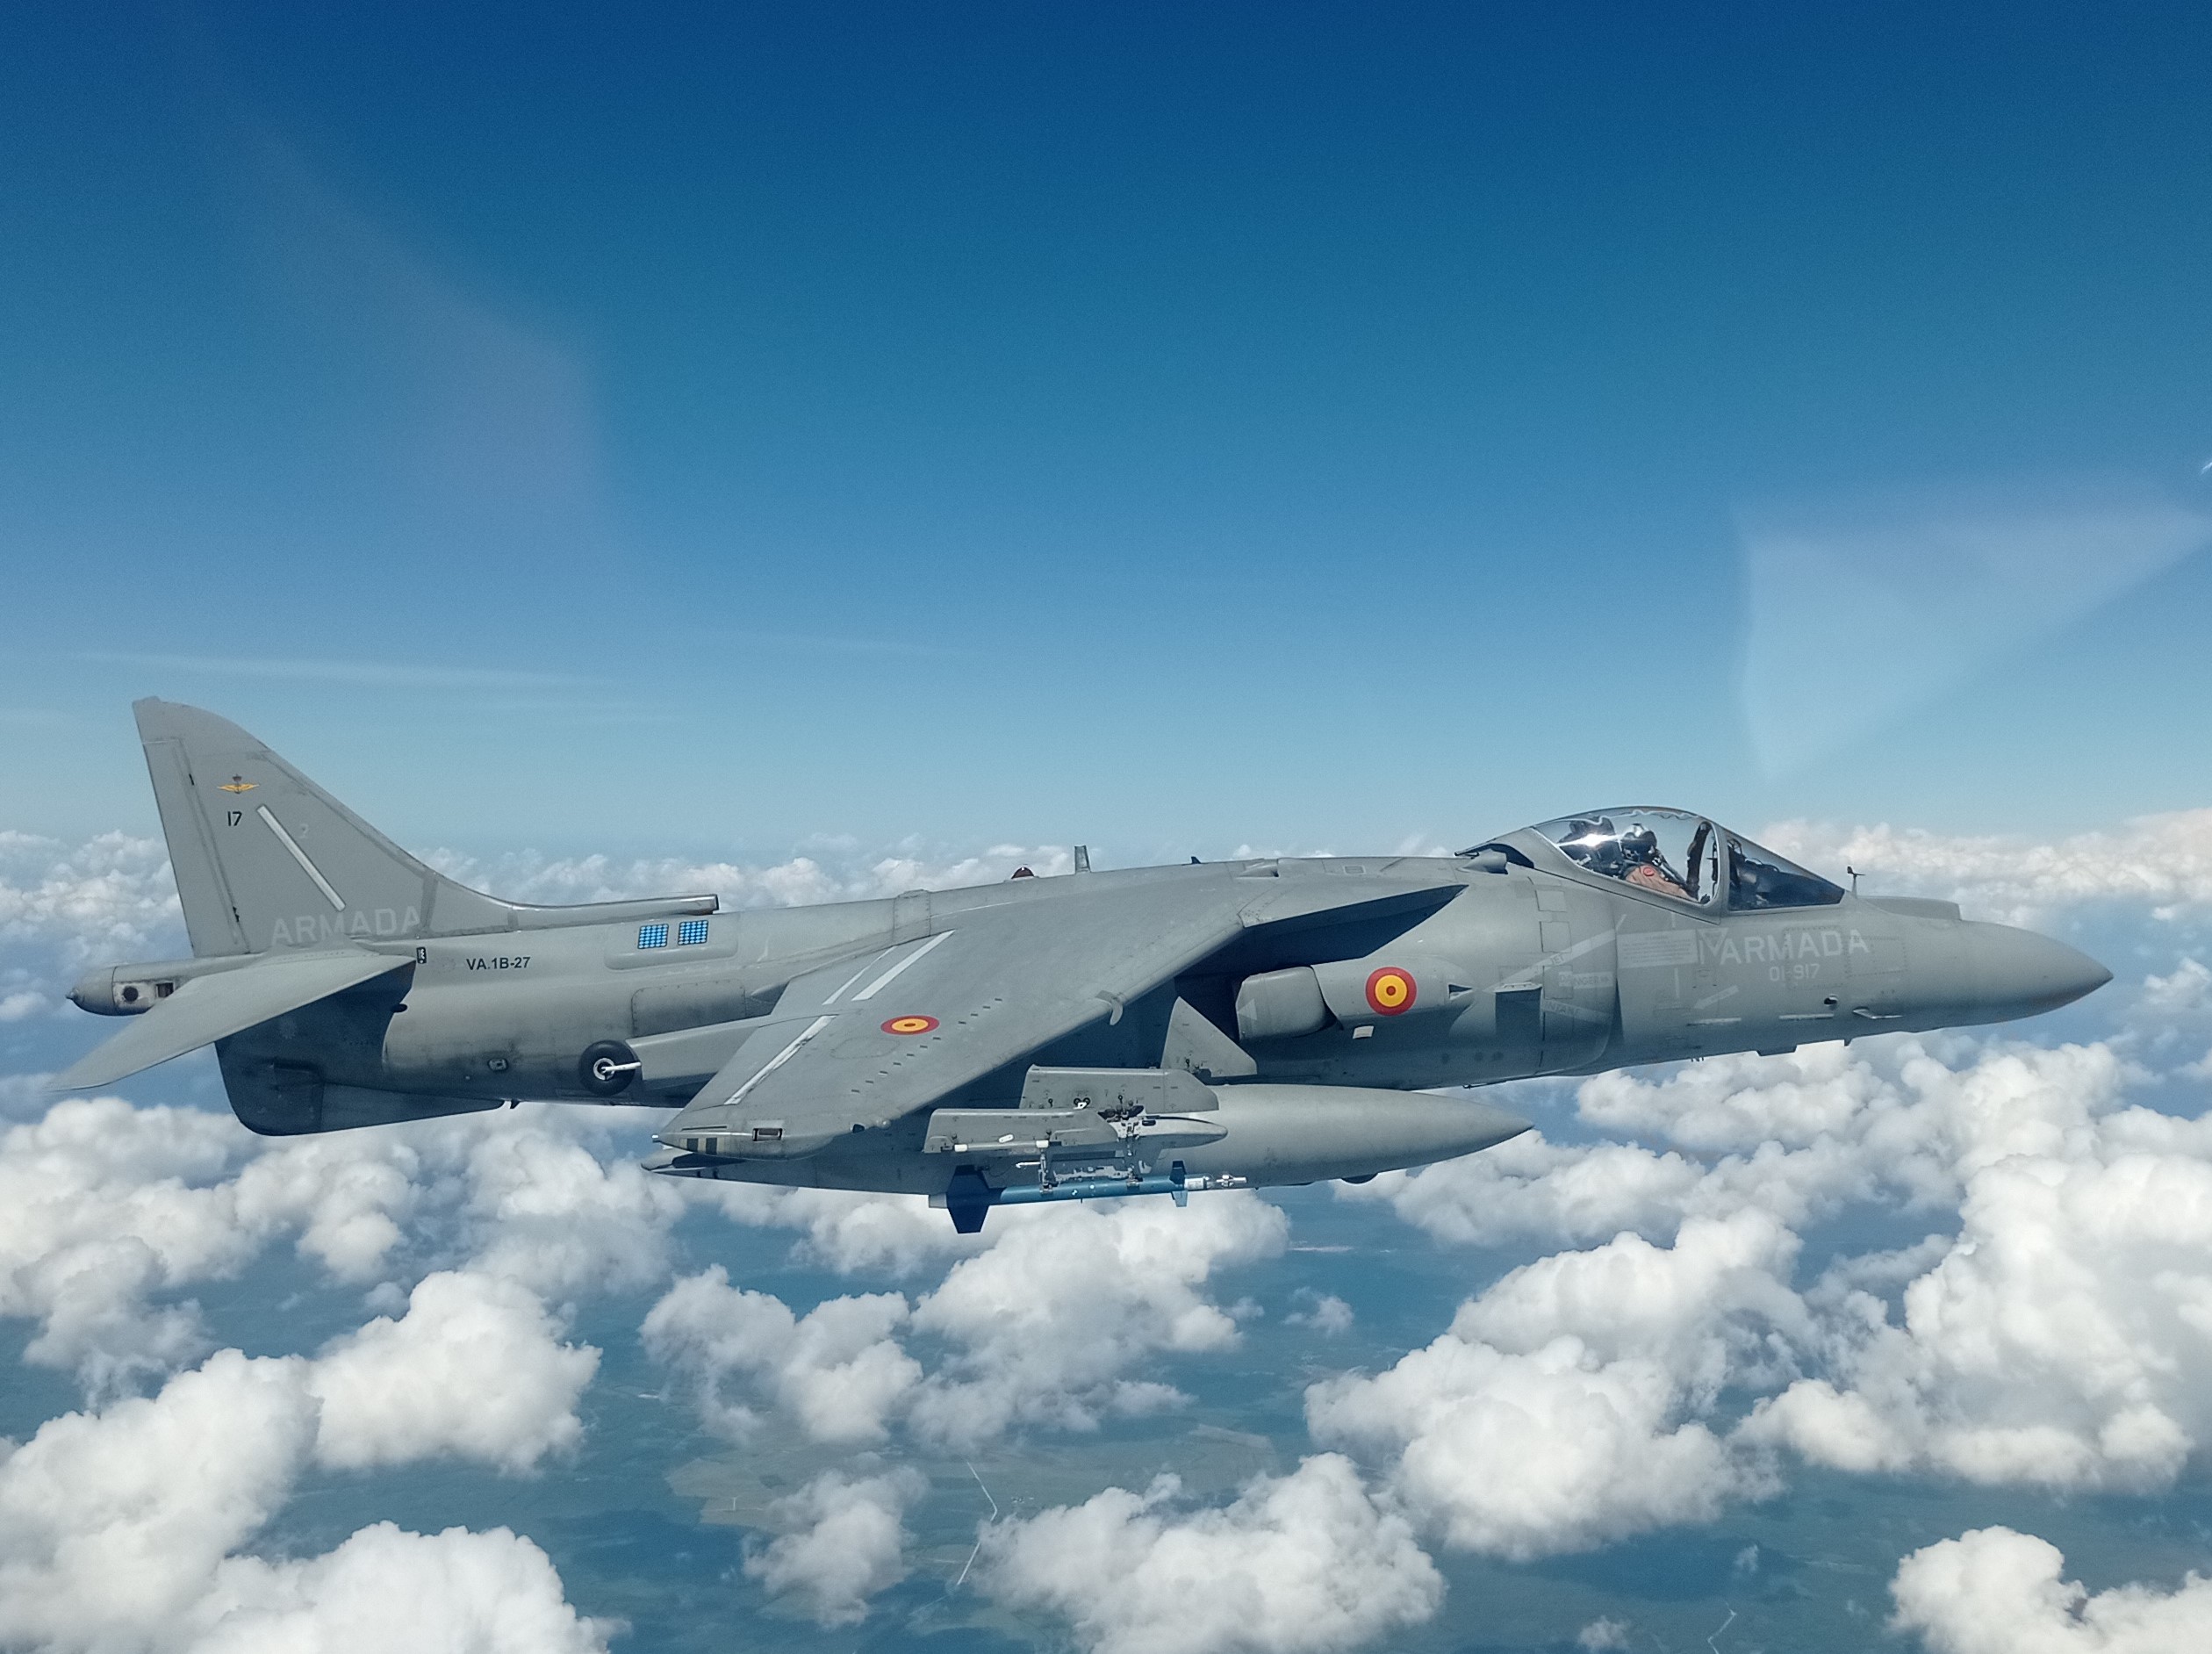 Harrier AV8B+ overflight